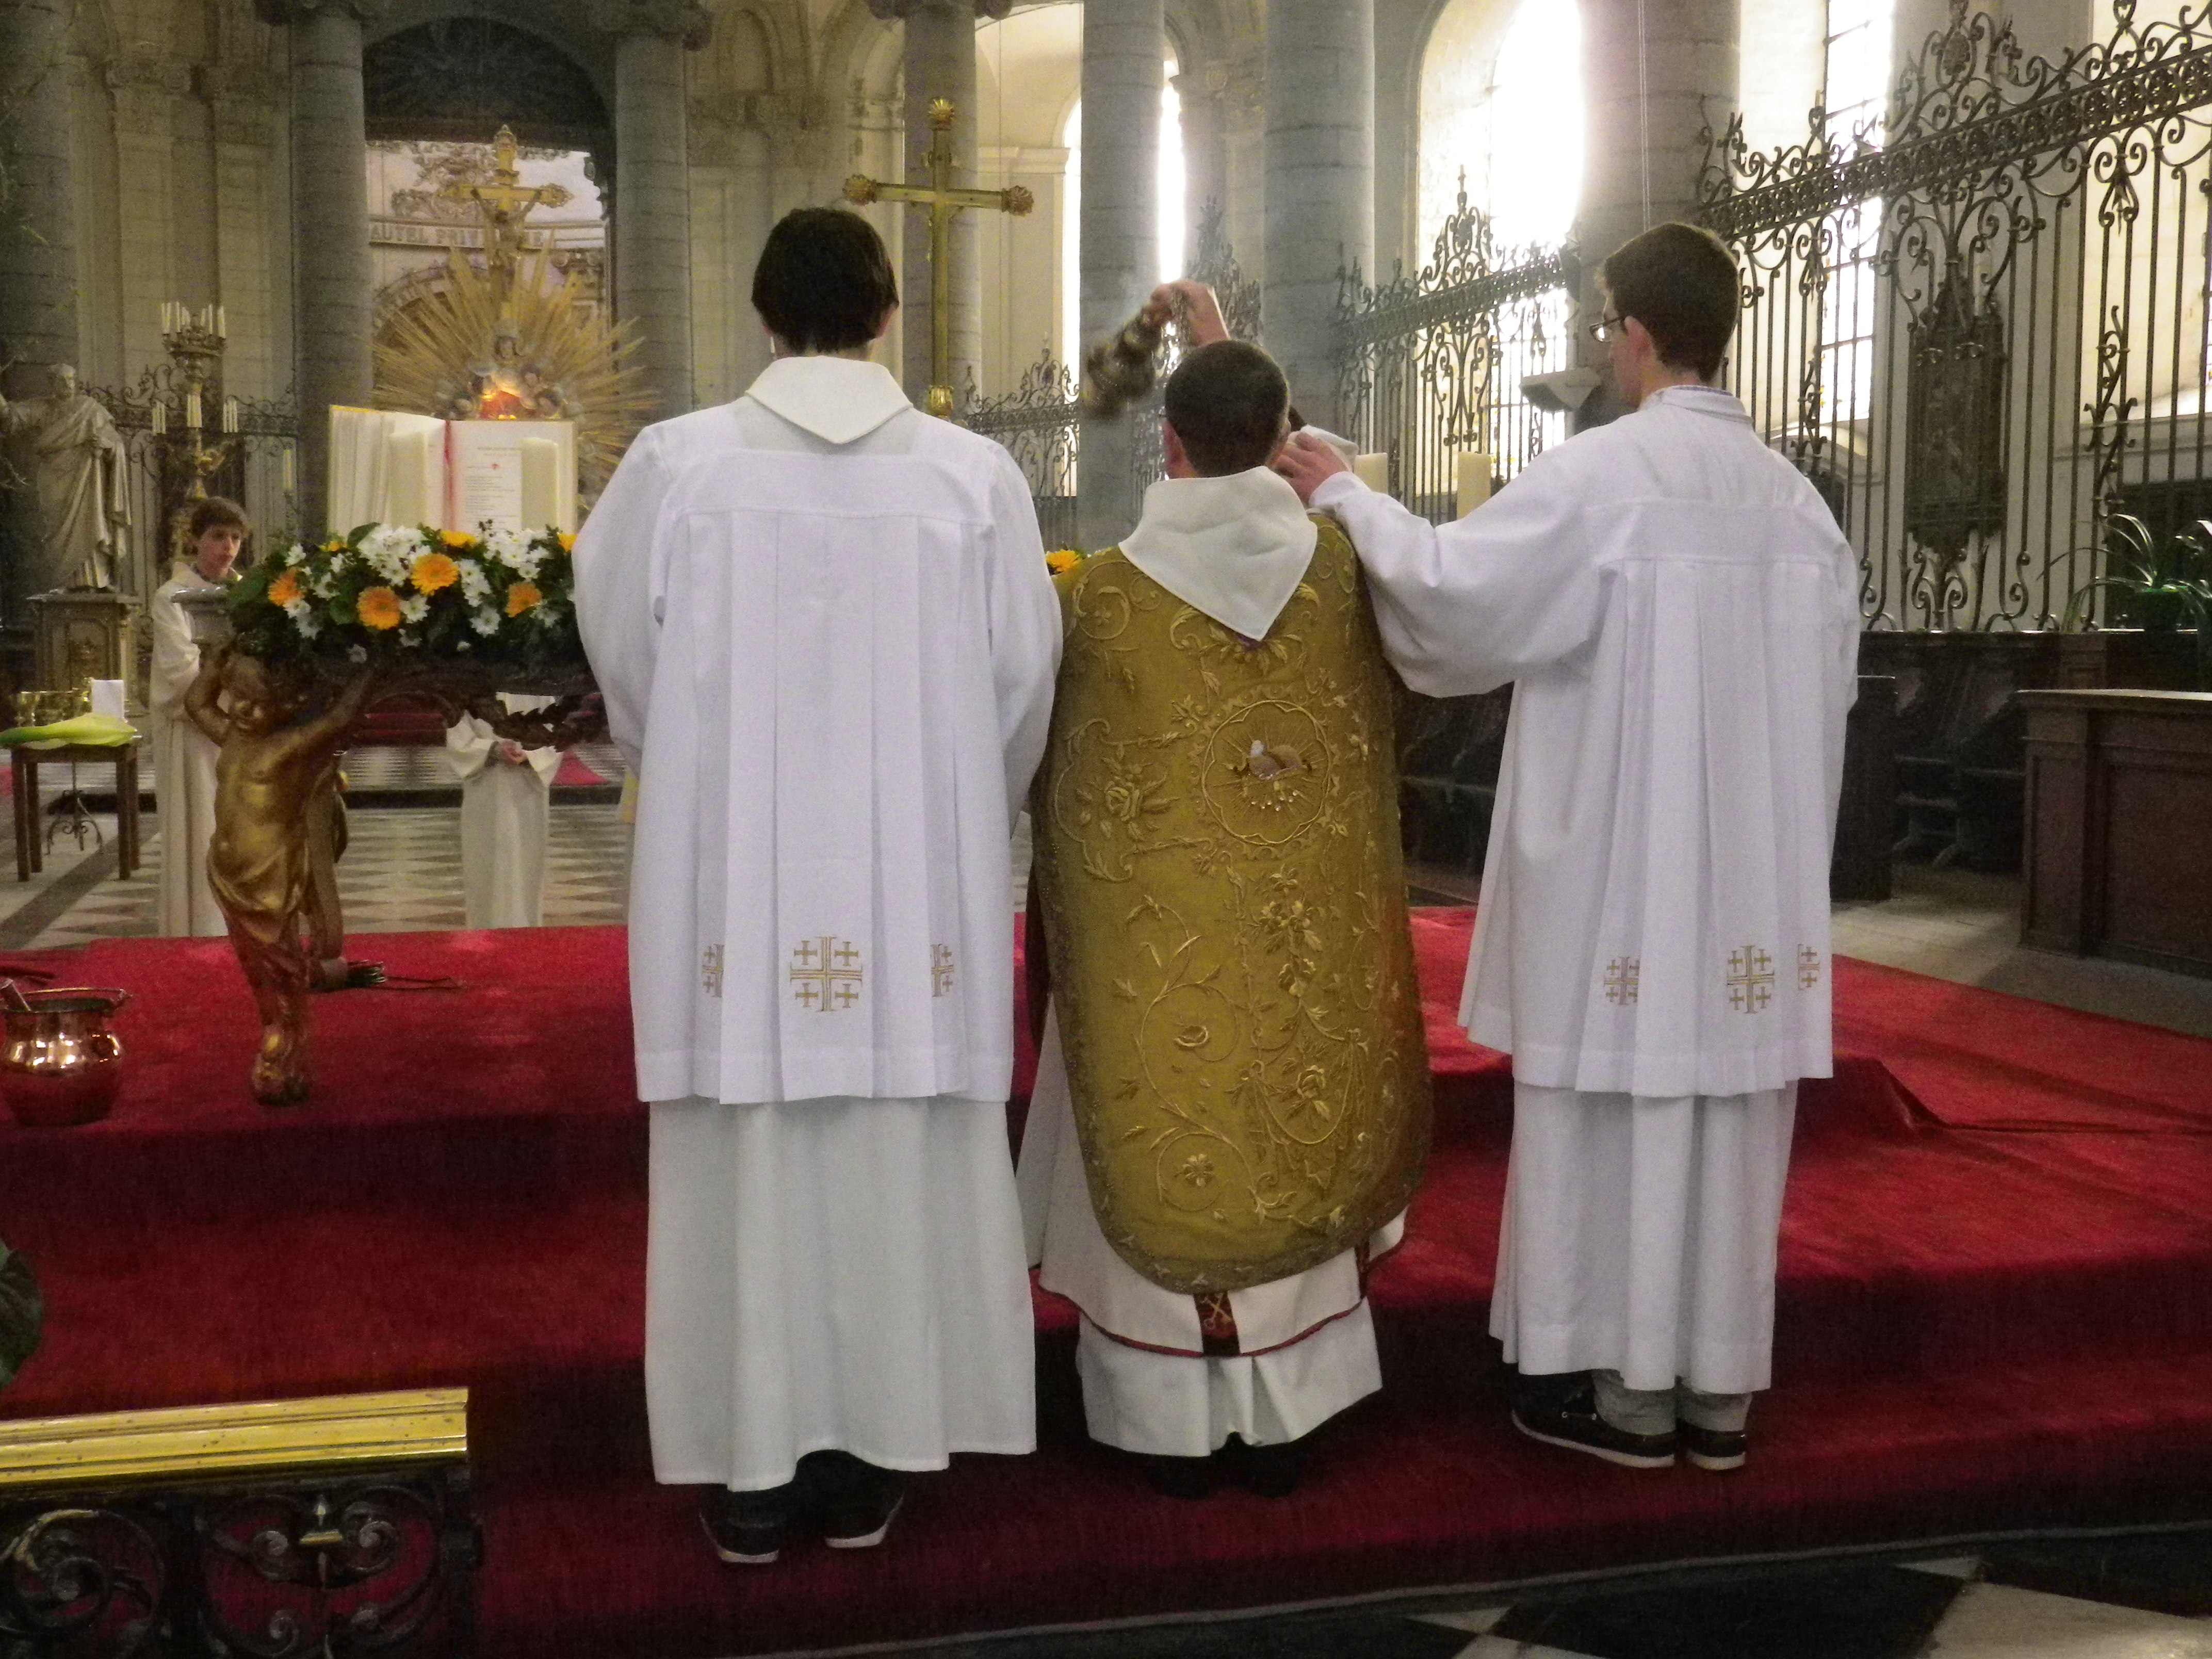 Le père Bernard Descarpentries, qui a revêtu une dalmatique et une superbe chasuble romaine dorée, encense l'autel, entouré des deux cérémoniaires pontificaux: Arnaud et Louis.